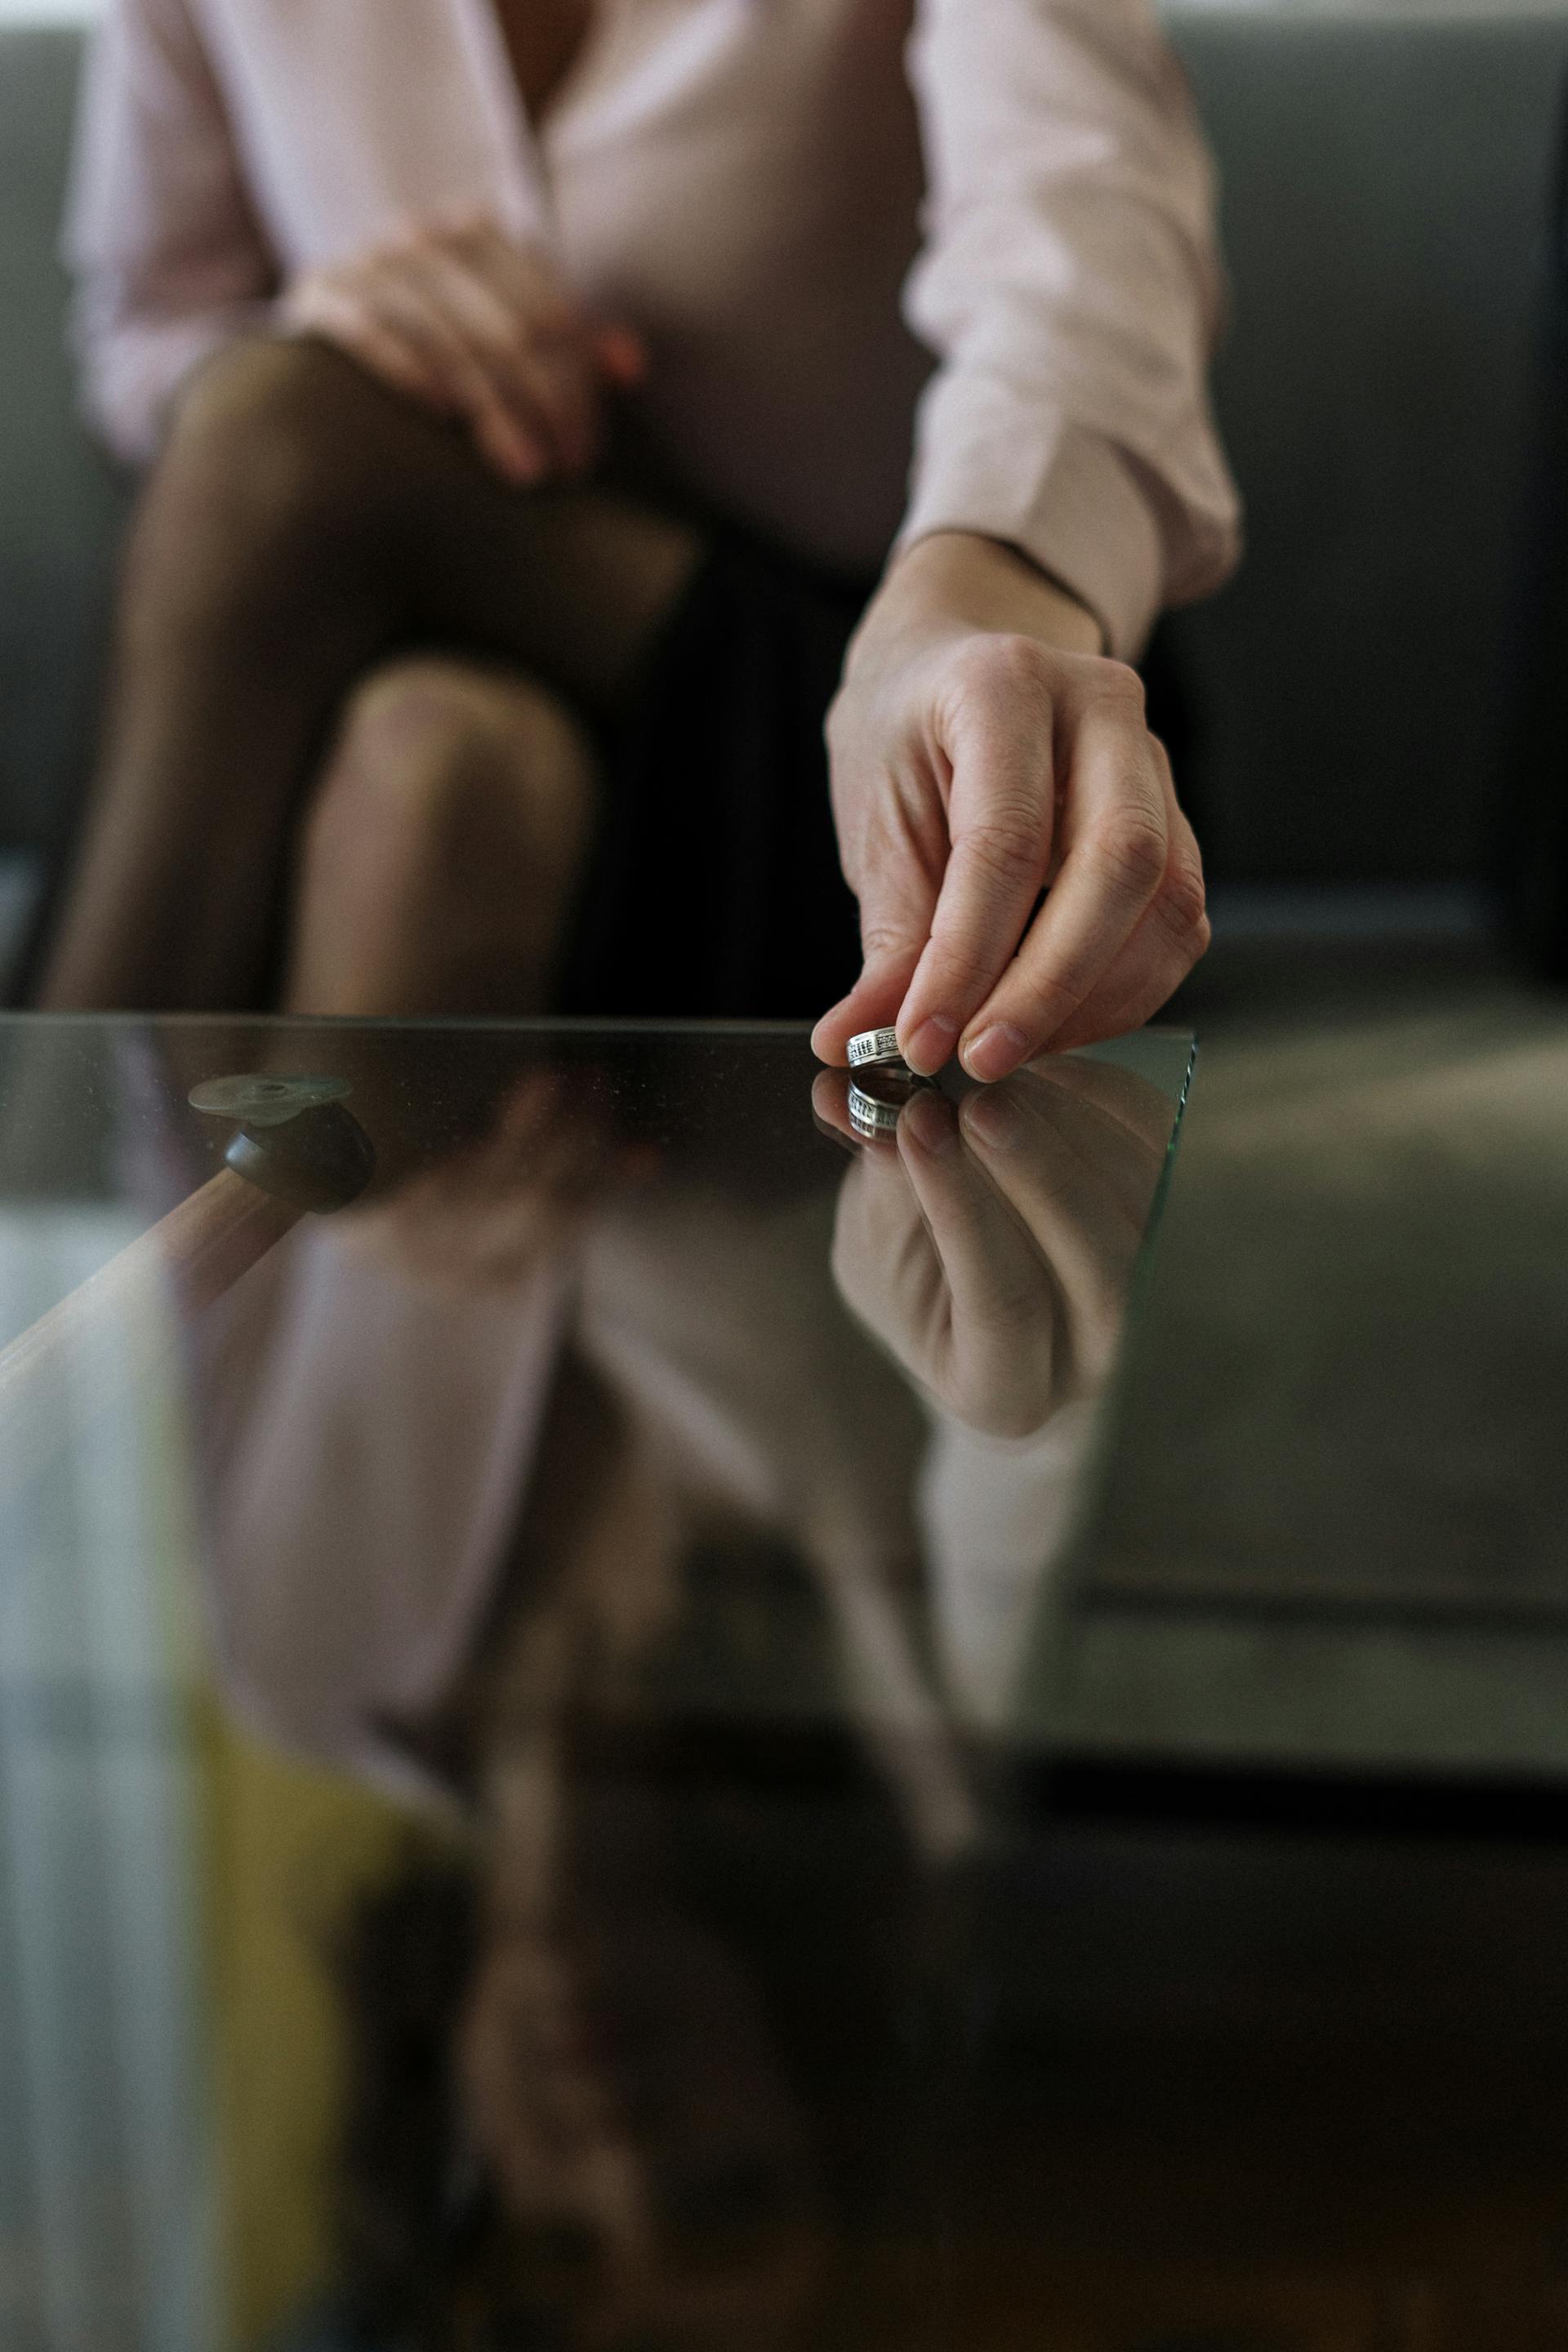 Femme posant son alliance sur la table | Source : Pexels